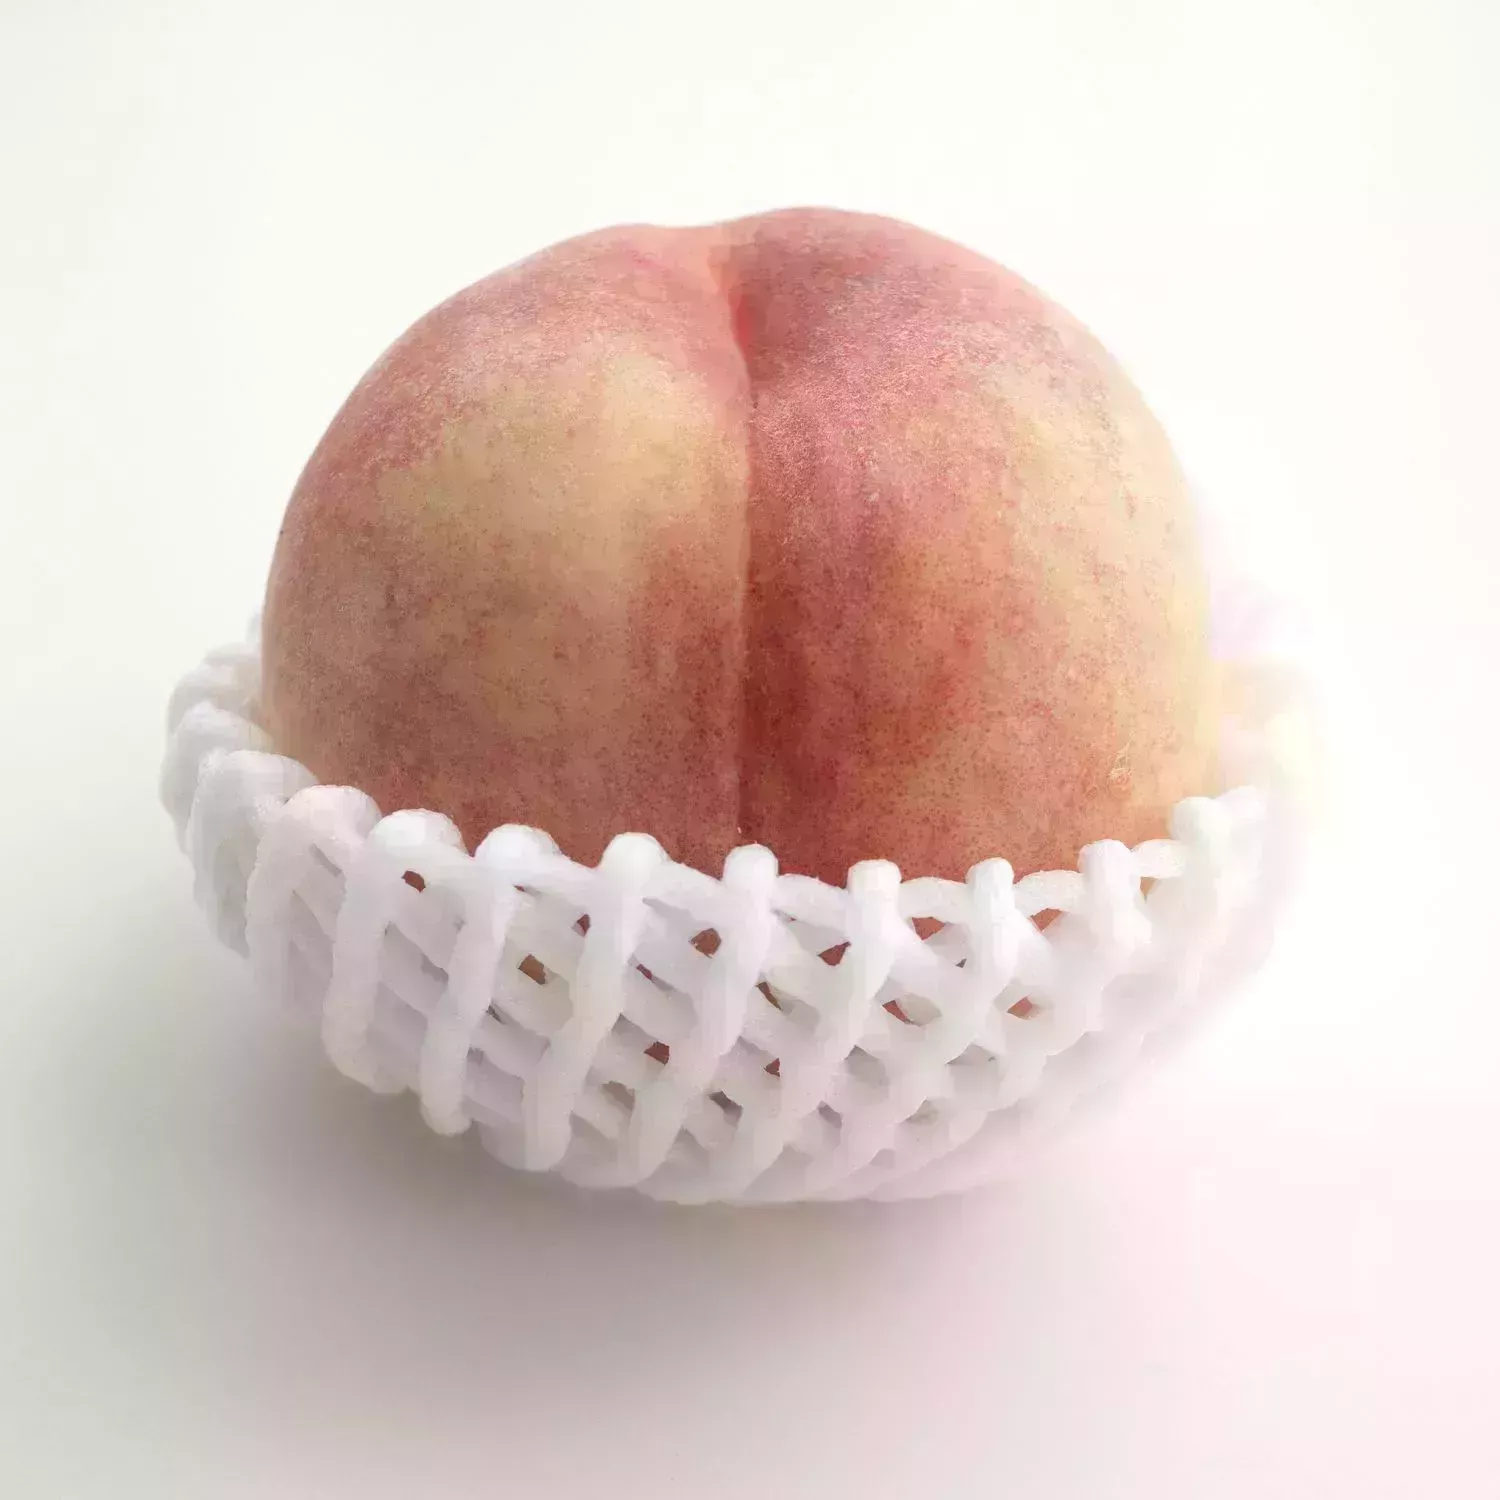 peach p1013695